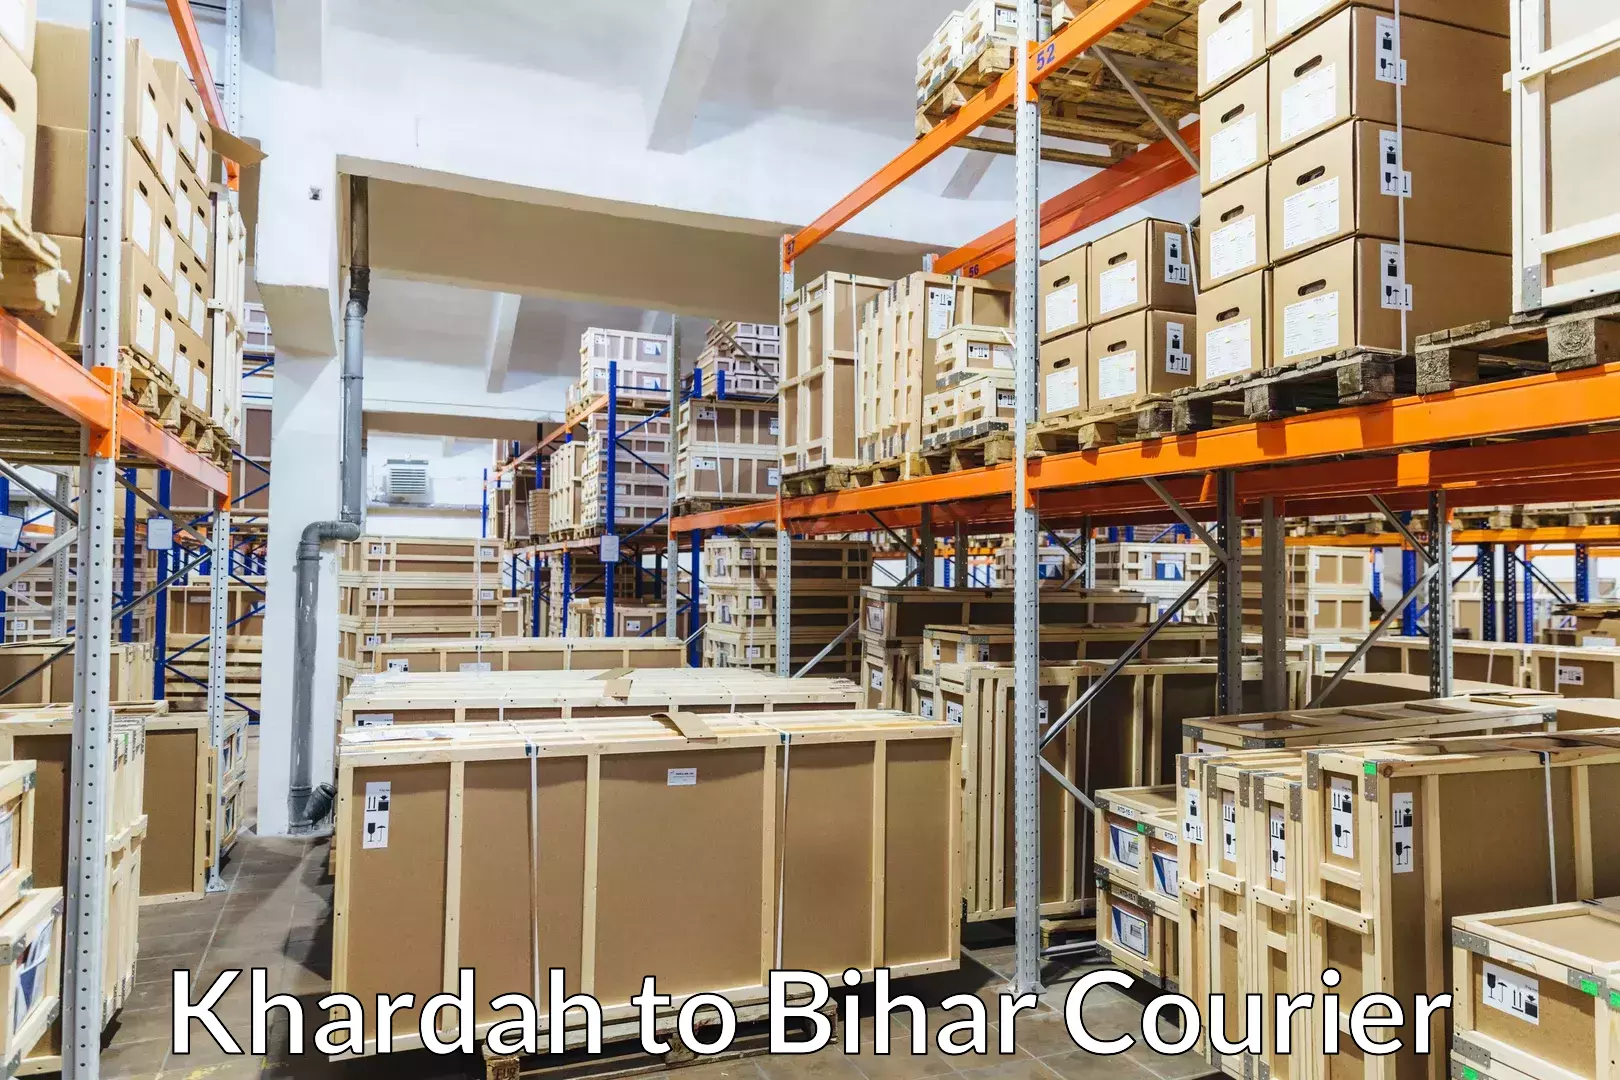 Baggage delivery support Khardah to Bikramganj